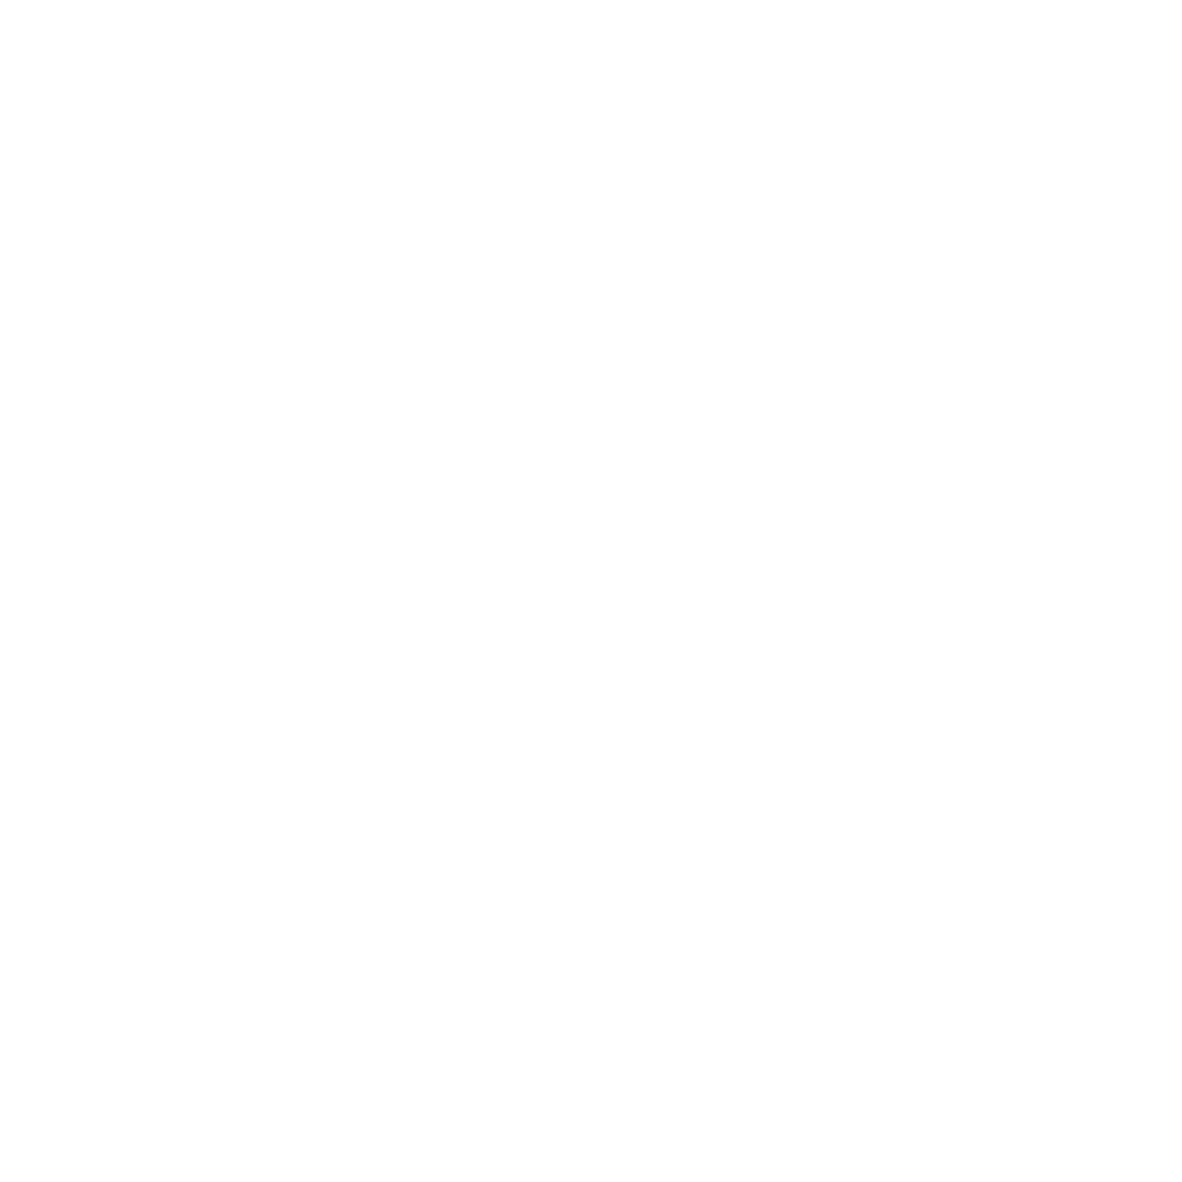 Tanna adventure By Rozenn 